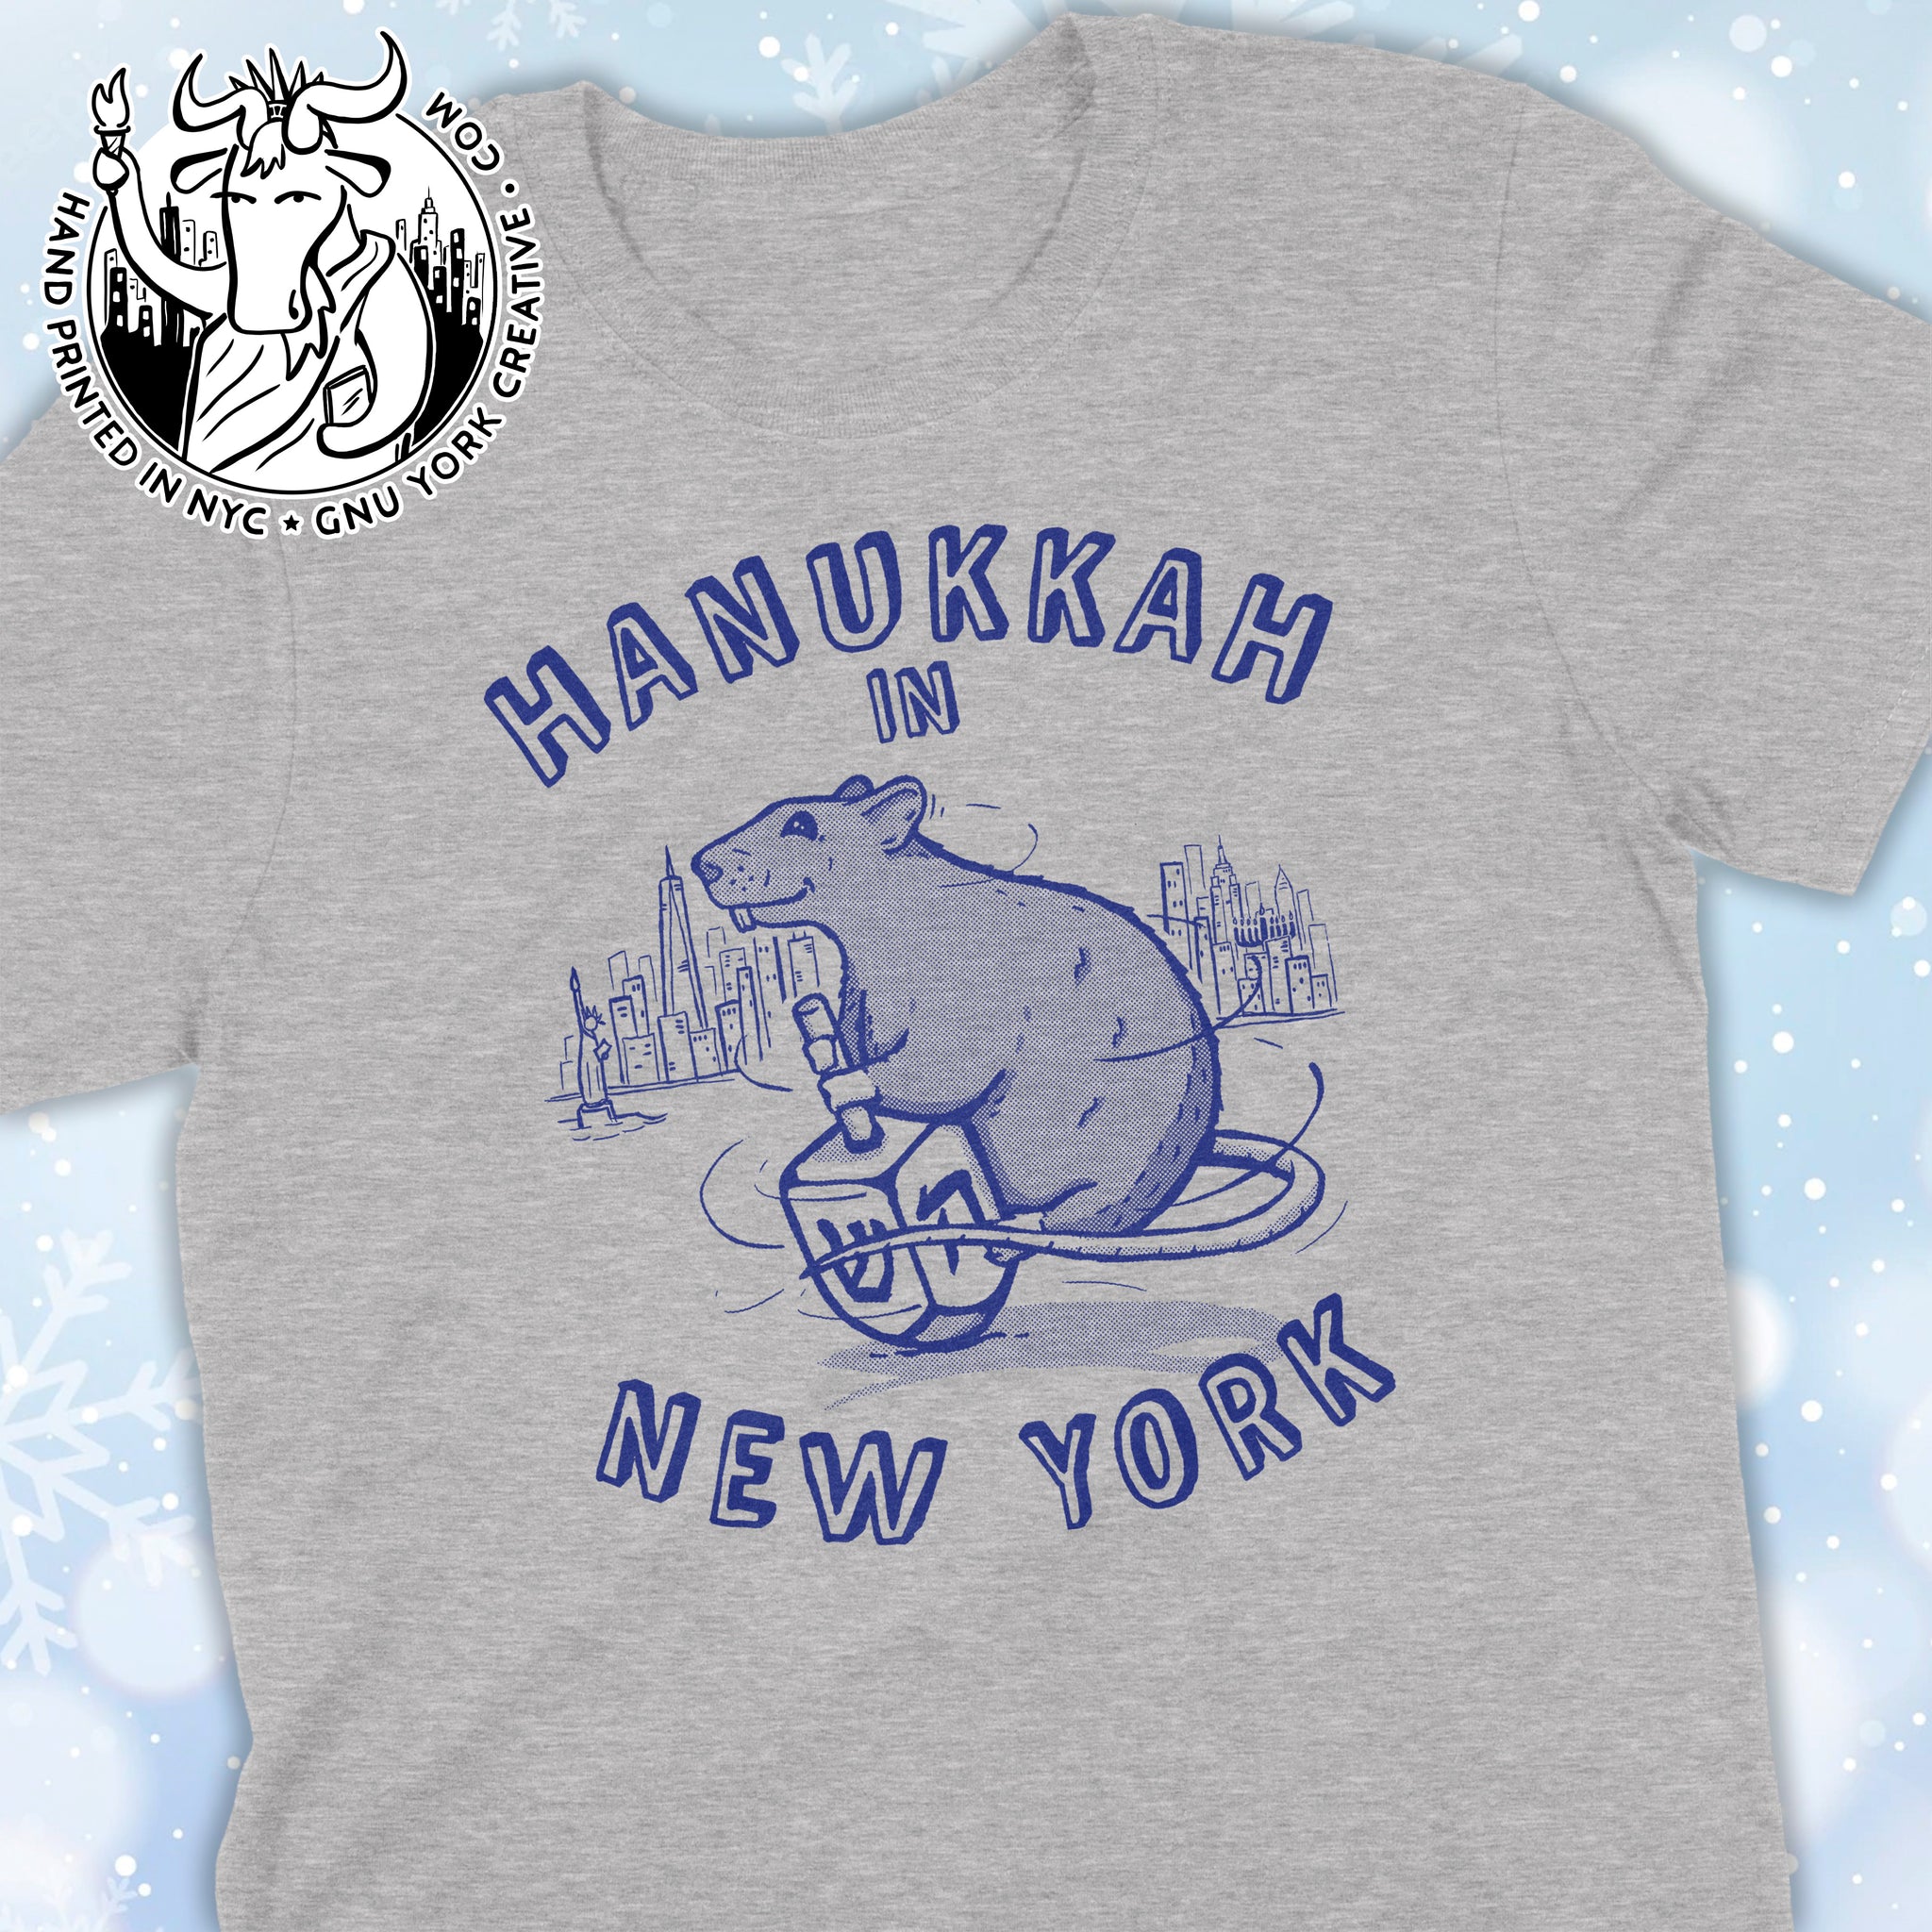 Hanukkah in New York Rat Shirt